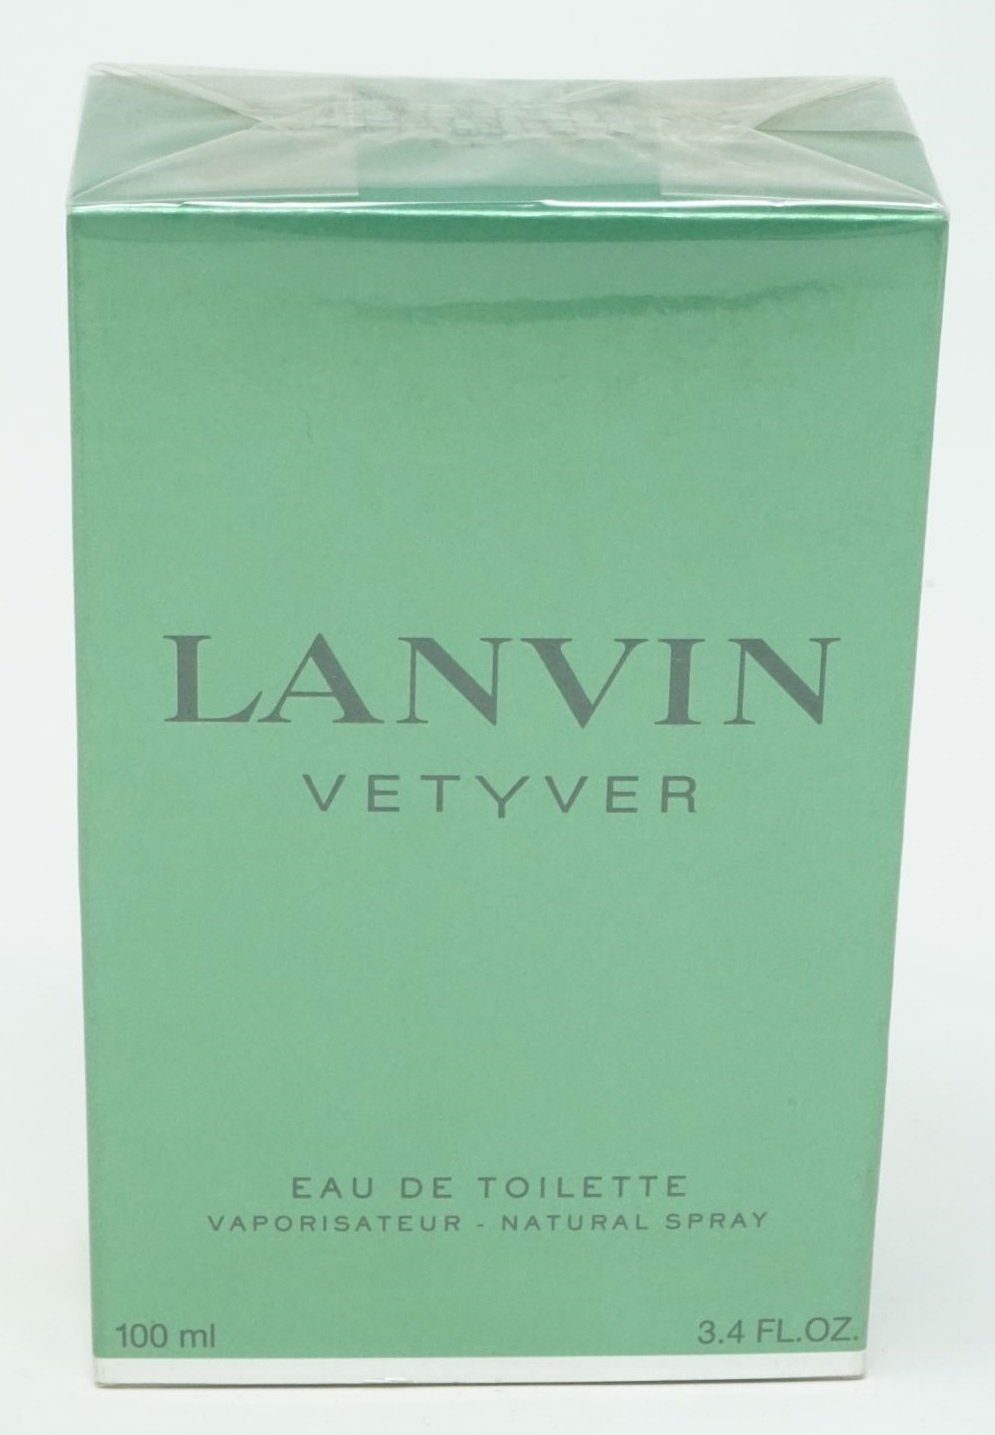 Toilette Spray Vetyver Toilette de ml Eau LANVIN de Eau Lanvin 100